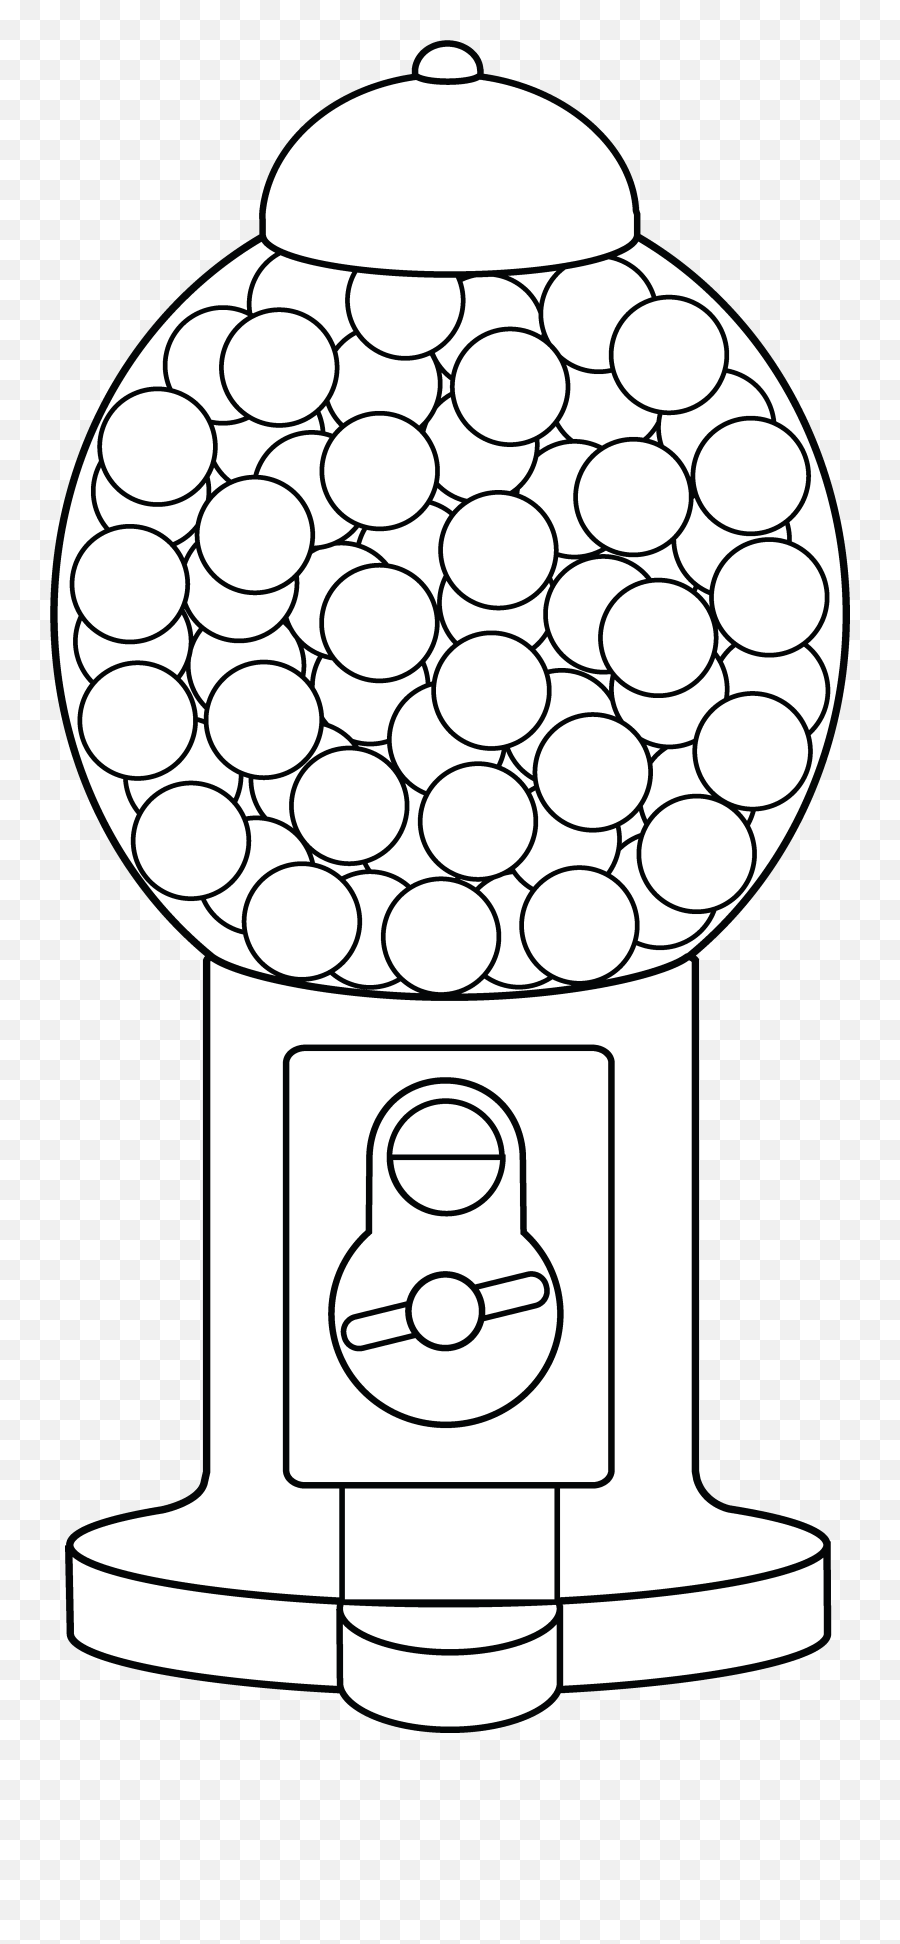 Black And White Gumball Machine Clipart - Gumball Machine Coloring Page Emoji,Gumball Machine Emoji